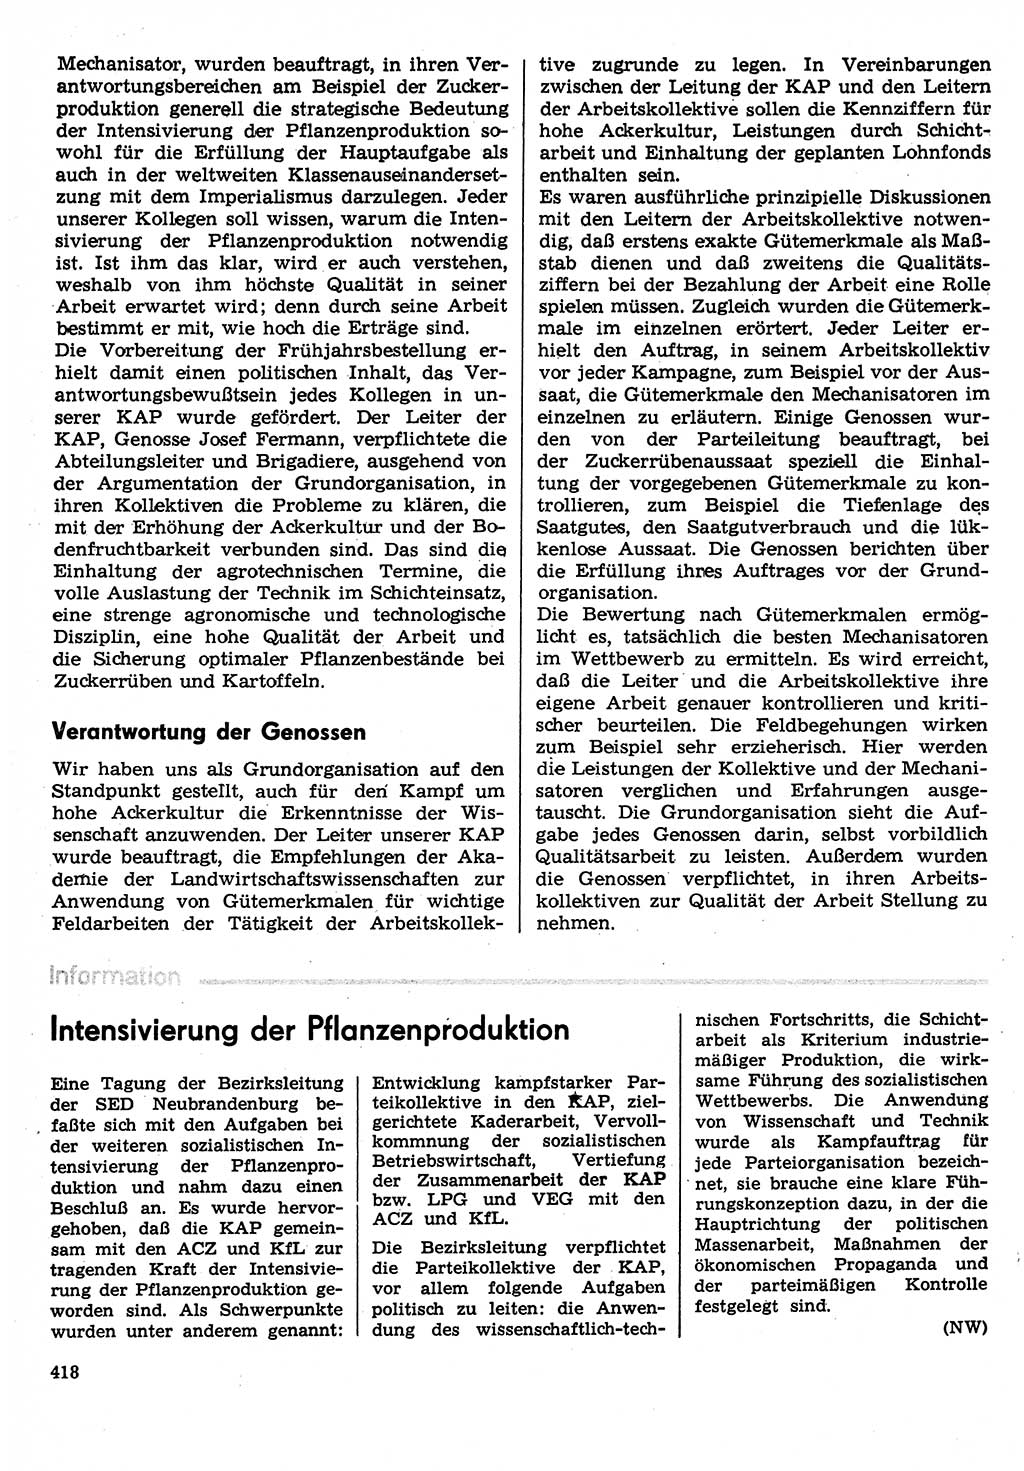 Neuer Weg (NW), Organ des Zentralkomitees (ZK) der SED (Sozialistische Einheitspartei Deutschlands) für Fragen des Parteilebens, 30. Jahrgang [Deutsche Demokratische Republik (DDR)] 1975, Seite 418 (NW ZK SED DDR 1975, S. 418)